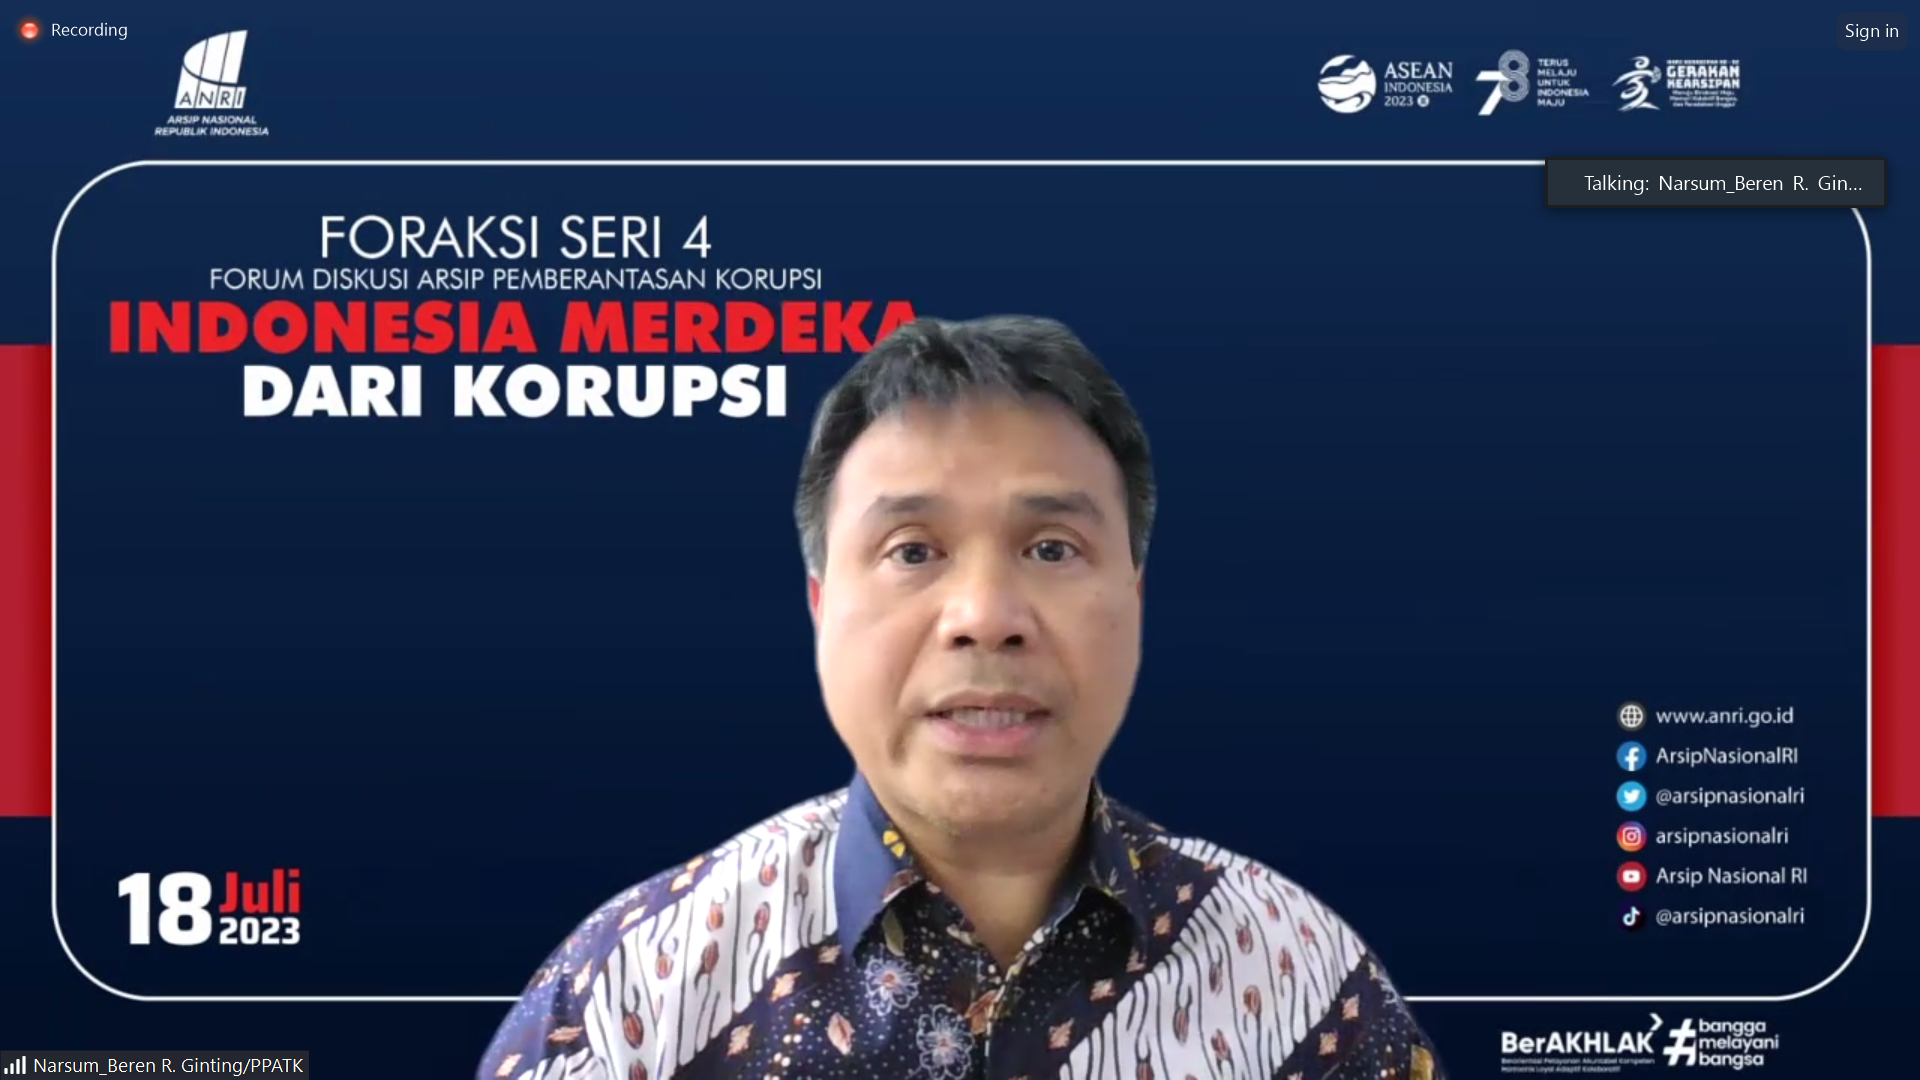 Forum Diskusi Arsip Pemberantasan Korupsi Seri 4: Indonesia Merdeka dari Korupsi